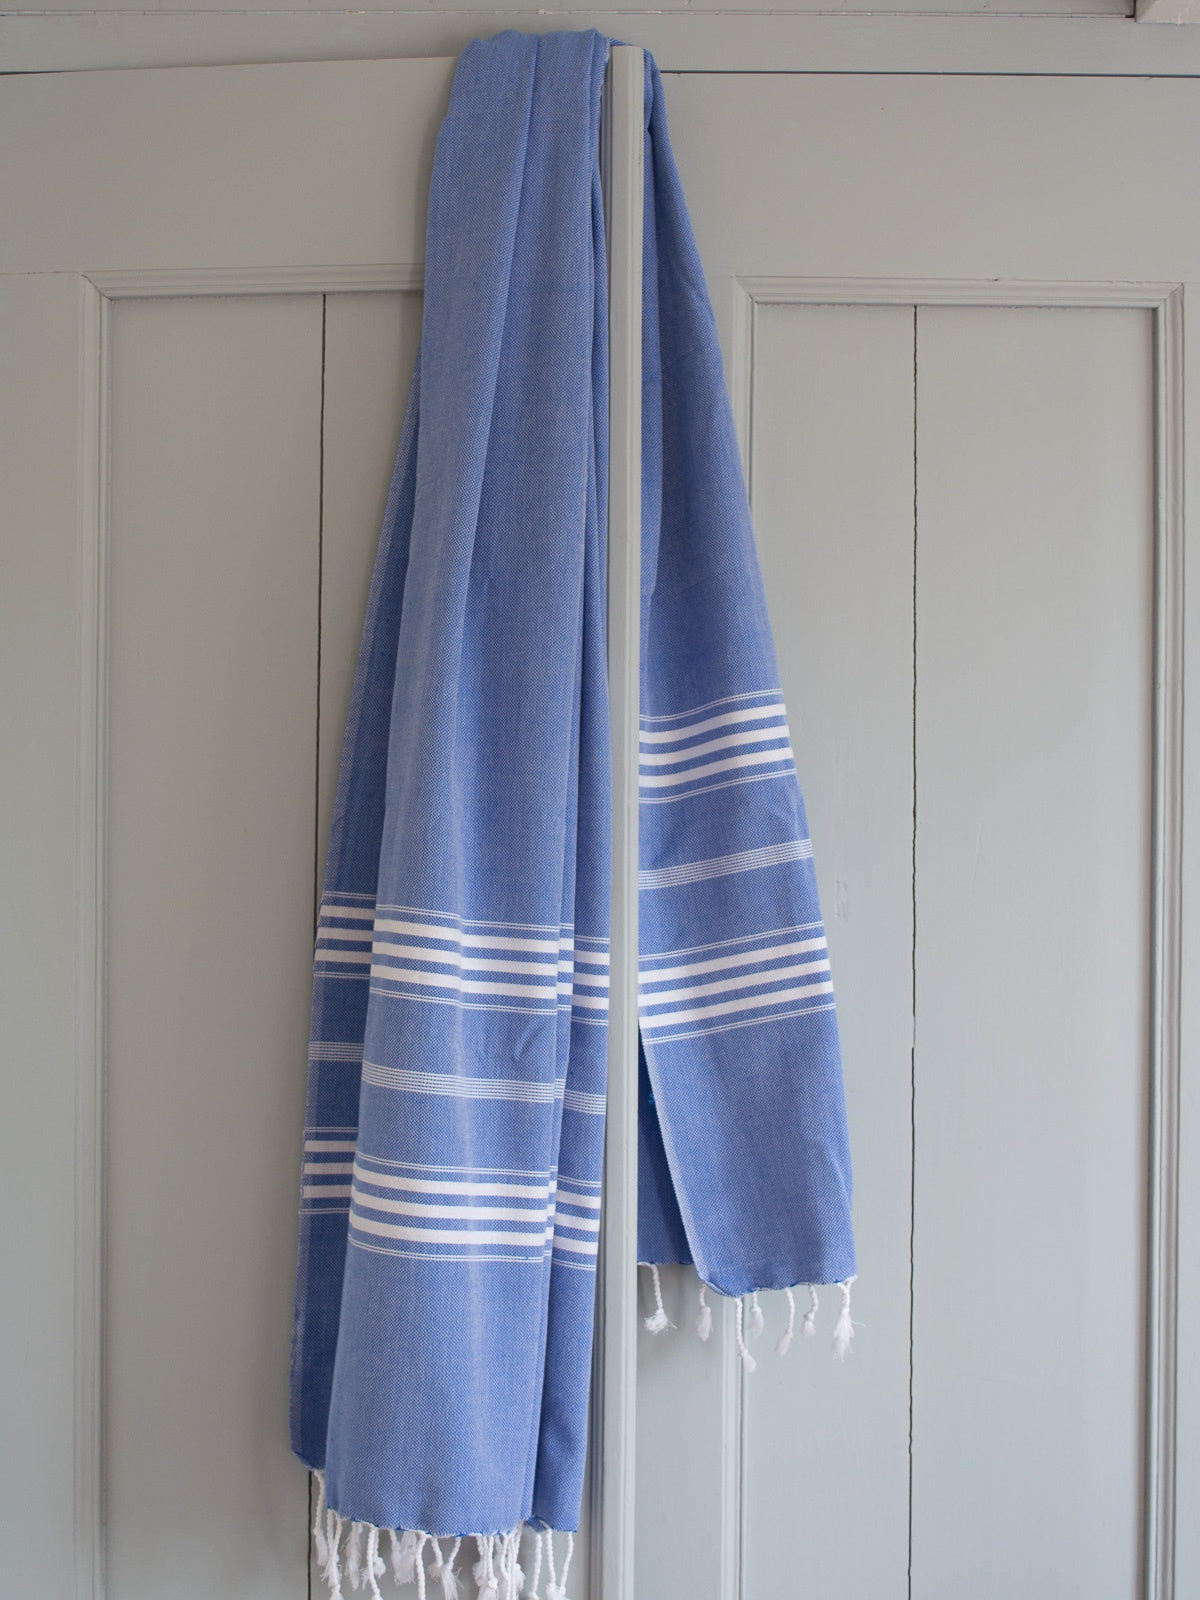 Hammam Towel 210x100cm Greek Blue Striped